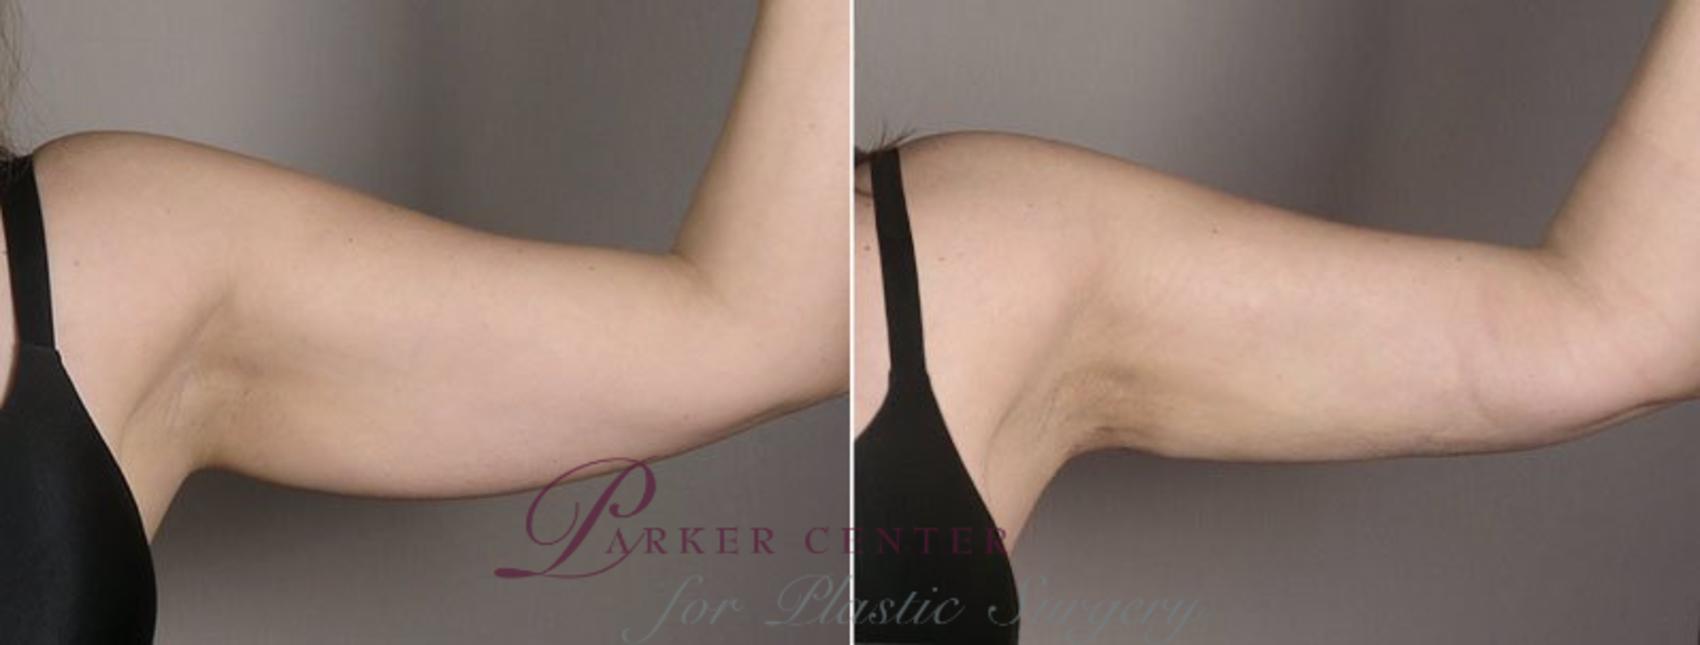 Upper Arm Rejuvenation Case 803 Before & After View #2 | Paramus, NJ | Parker Center for Plastic Surgery